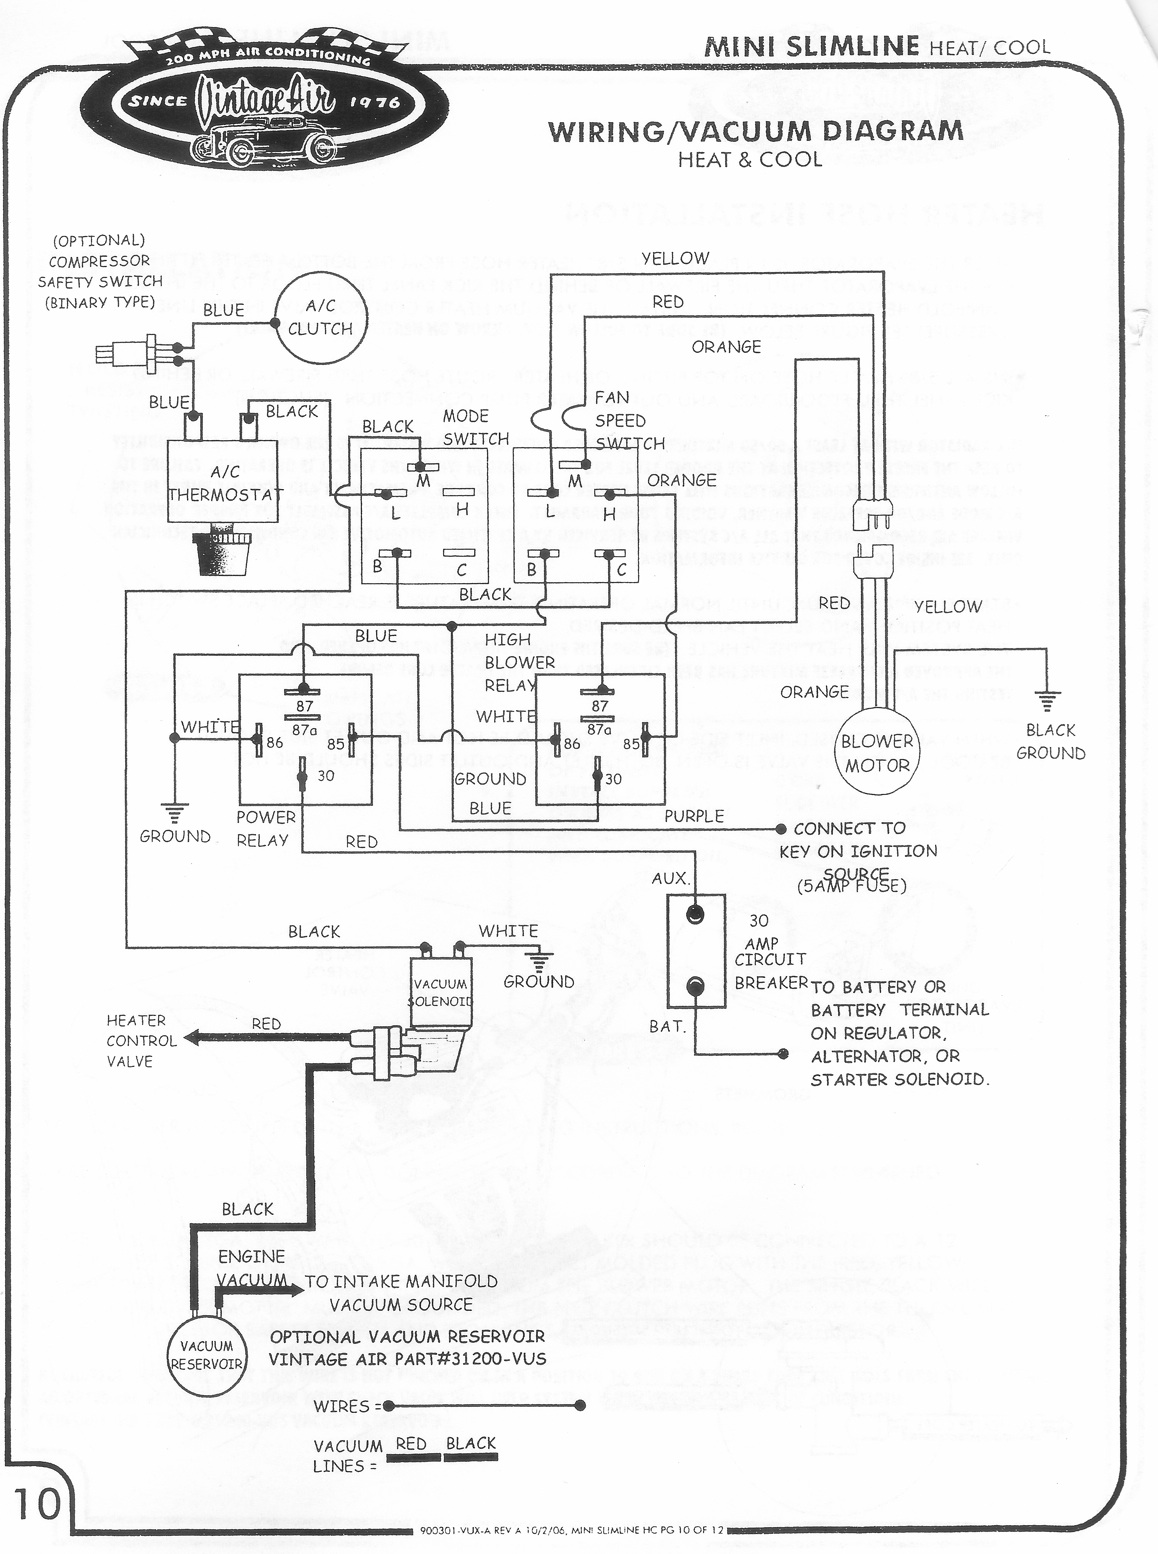 trinary switch wiring diagram